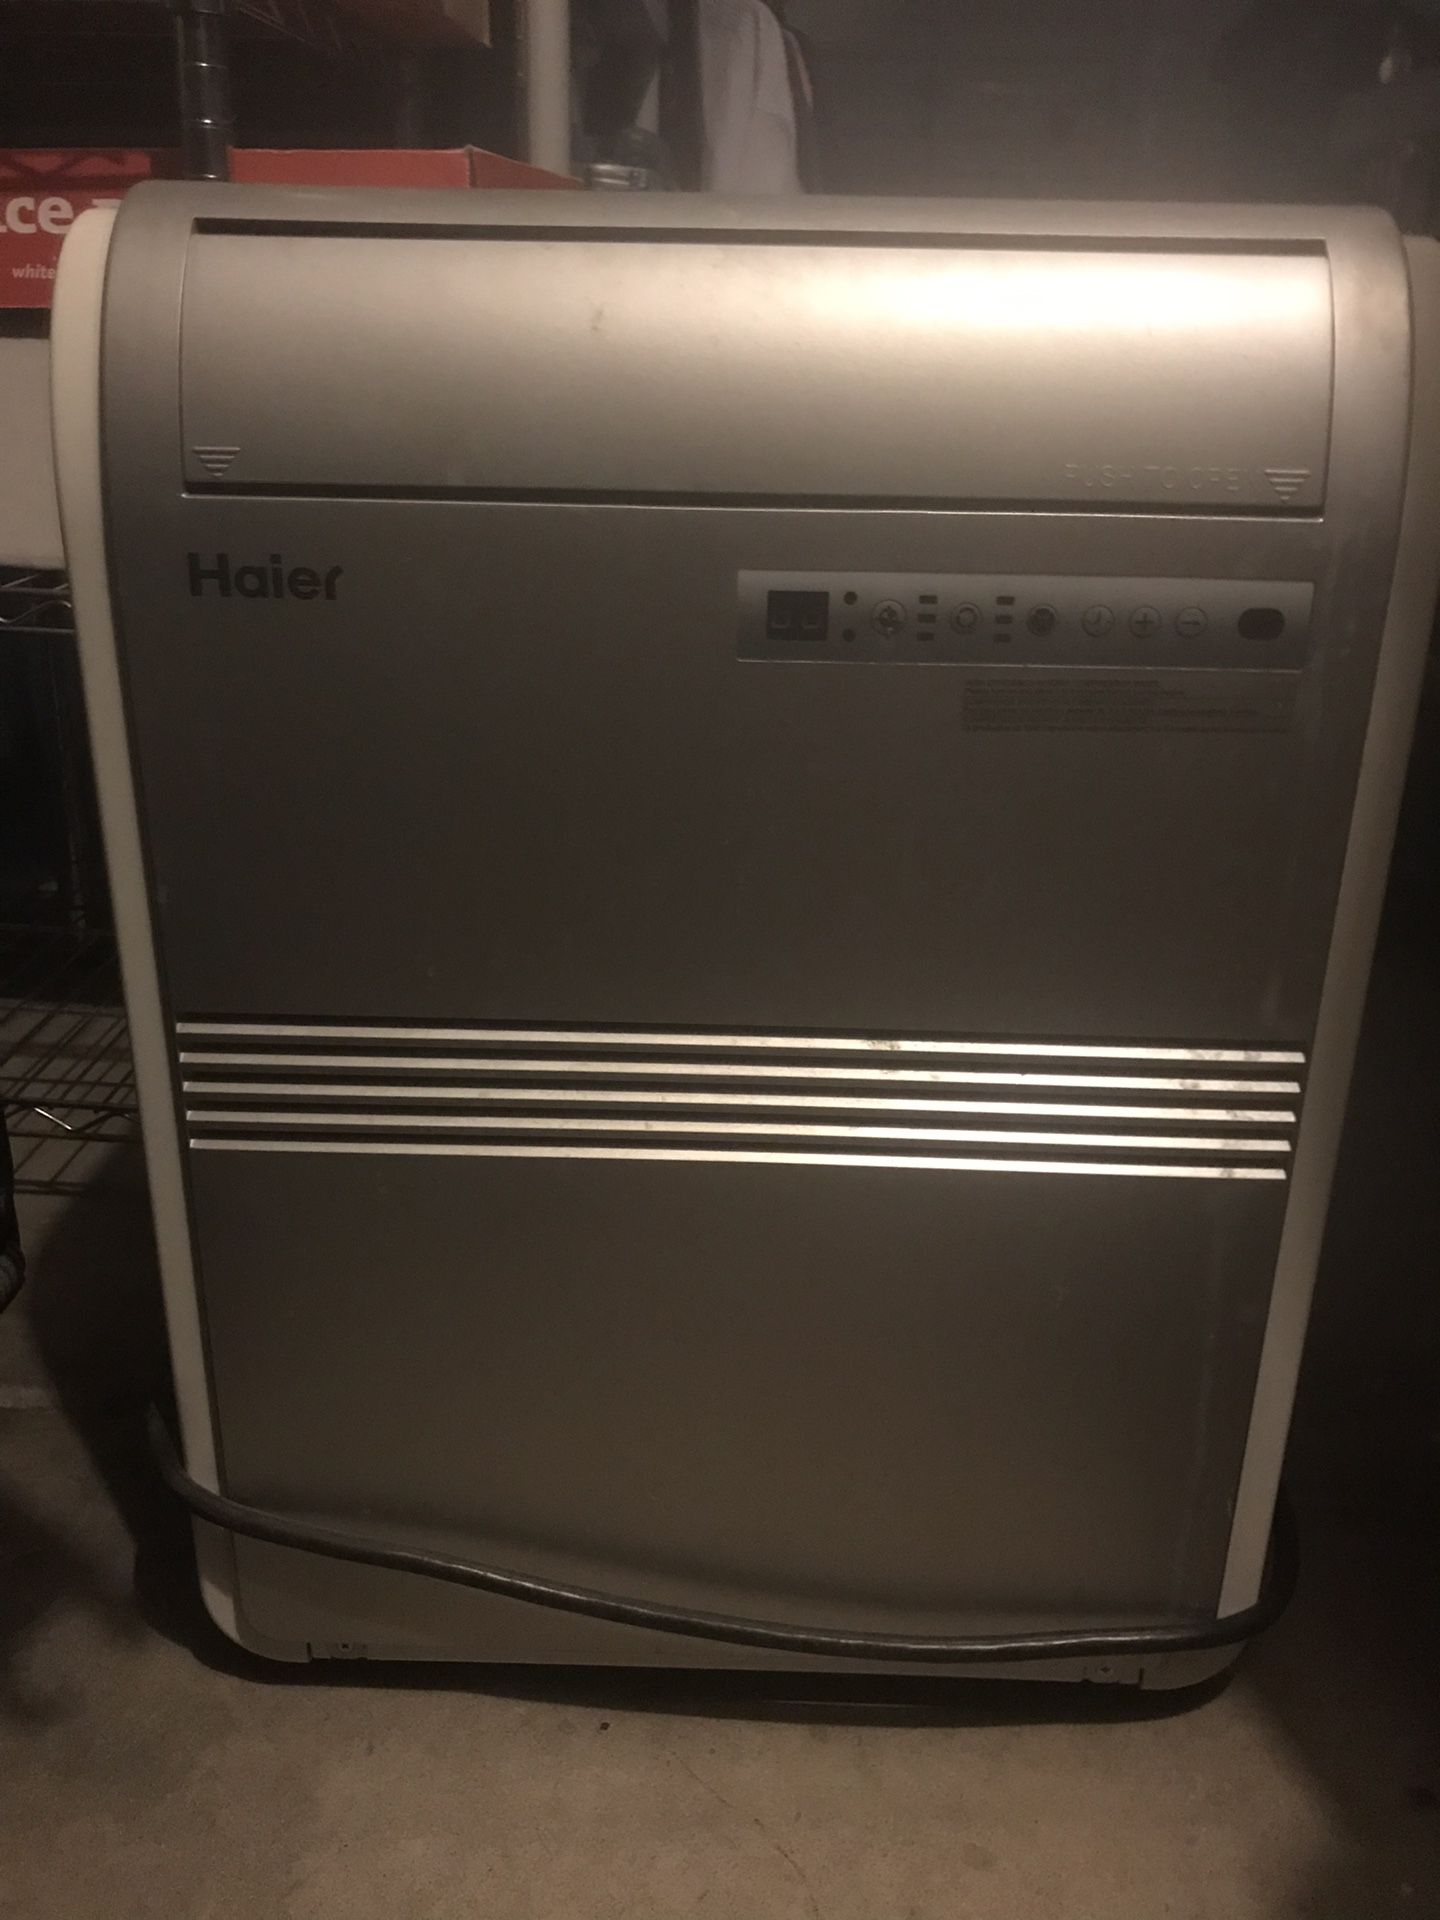 Haier 8,000 BTU portable air conditioner